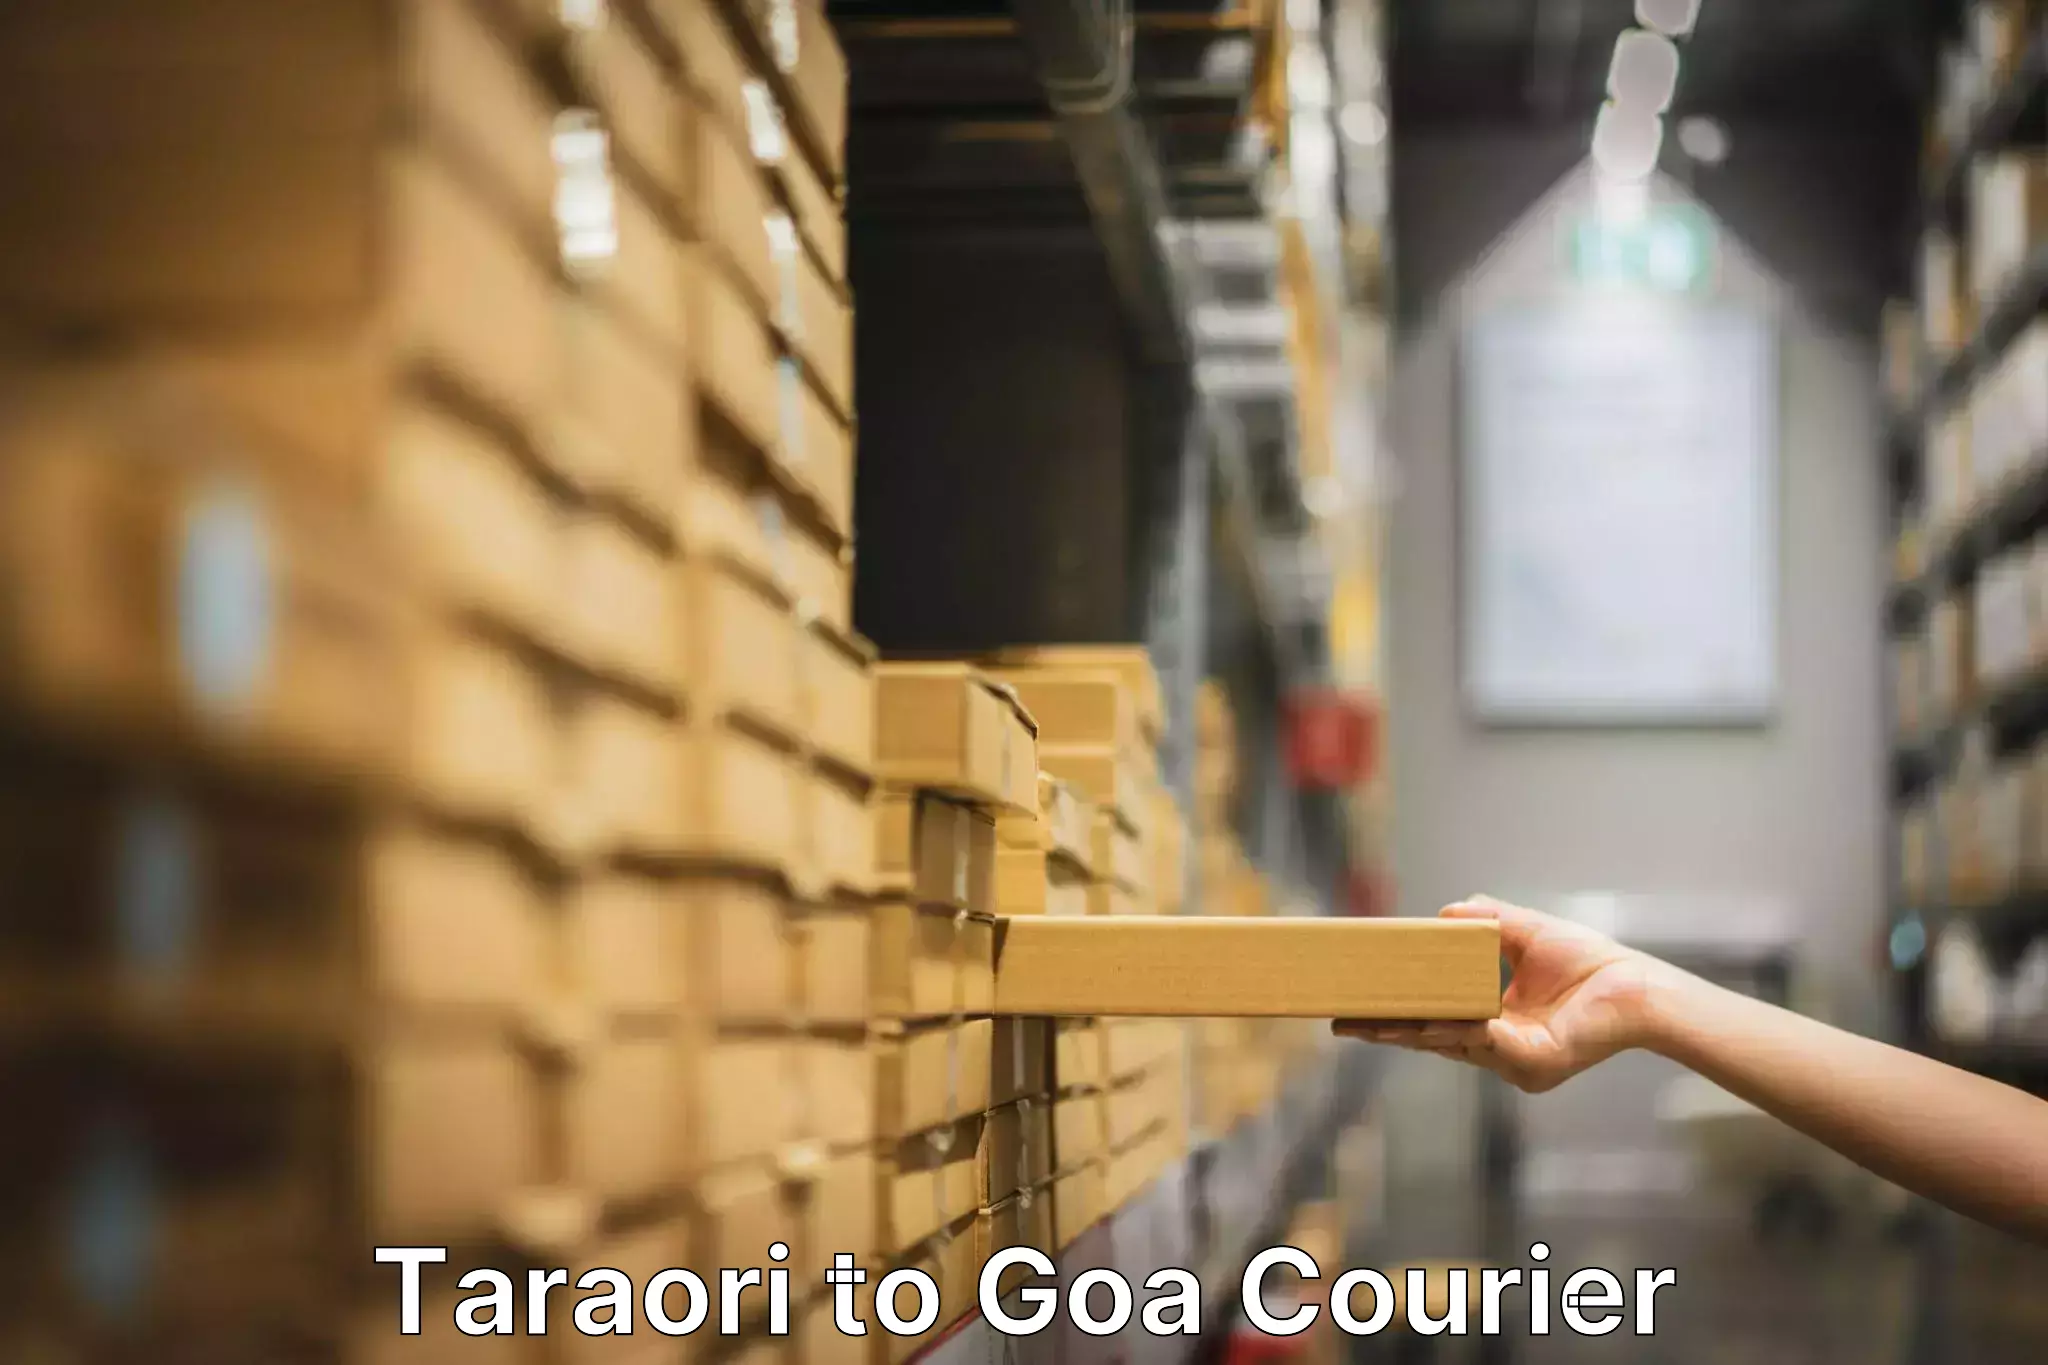 Nationwide household movers Taraori to NIT Goa